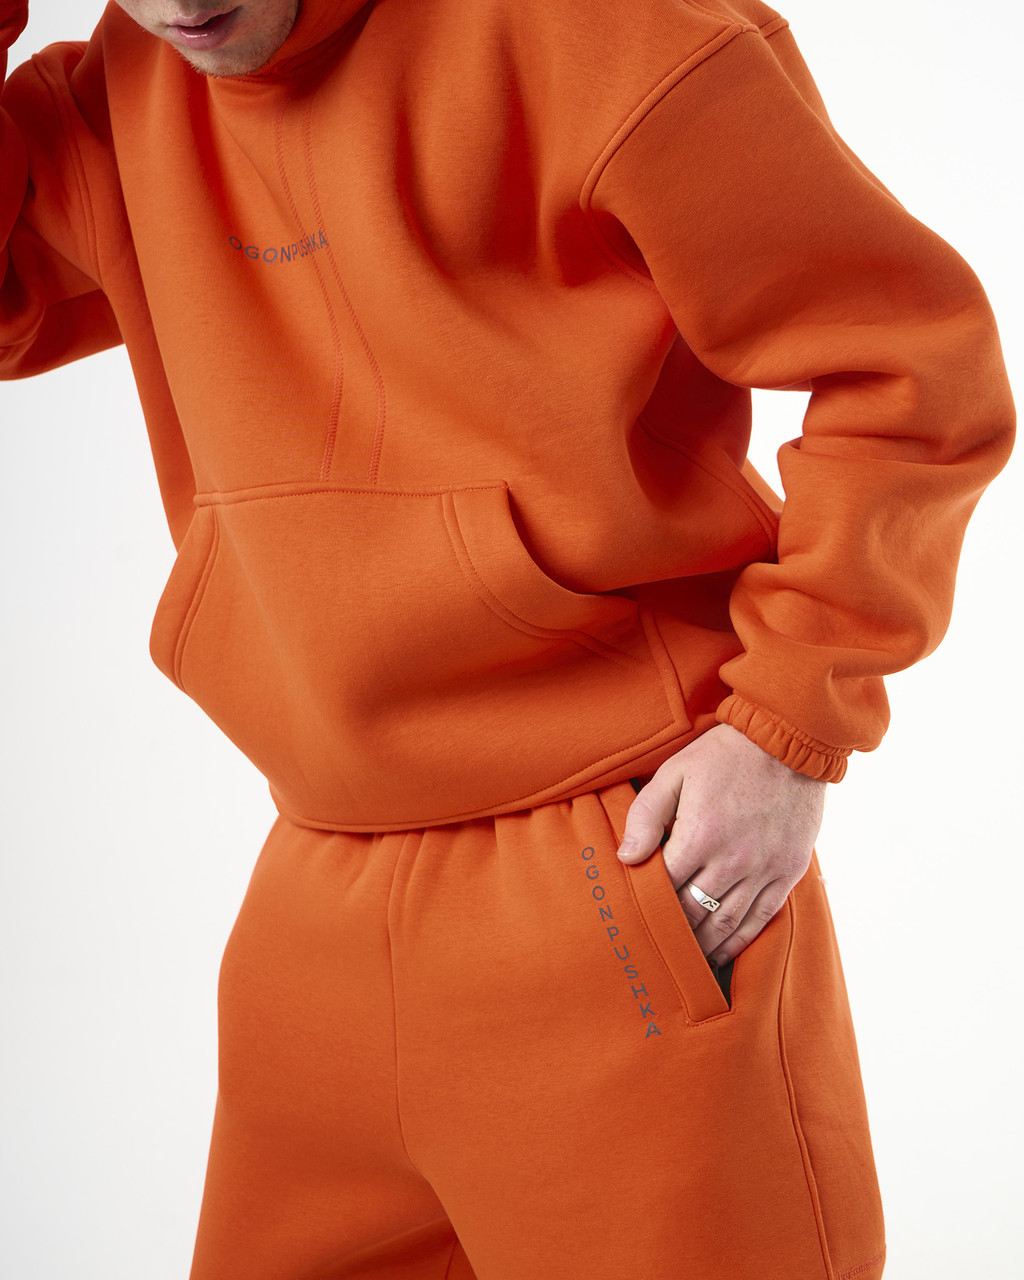 Теплий спортивний костюм оверсайз OGONPUSHKA Scale 2.1 оранжевий Пушка Огонь - Фото 3